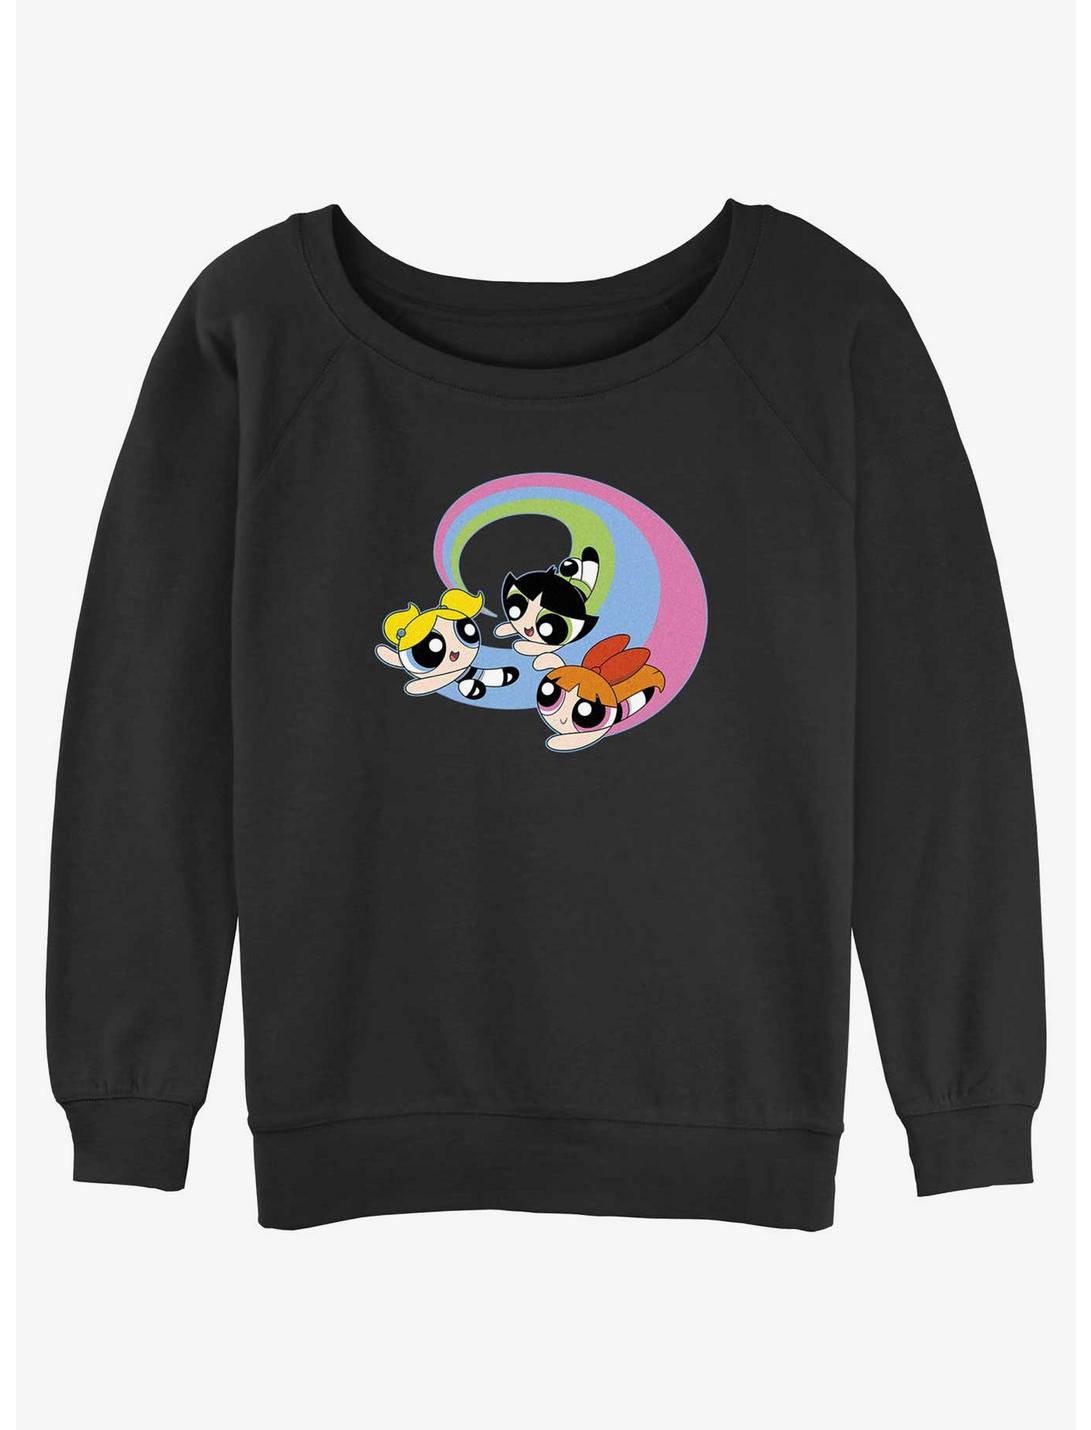 Cartoon Network The Powerpuff Girls Flying Around Womens Slouchy Sweatshirt, BLACK, hi-res